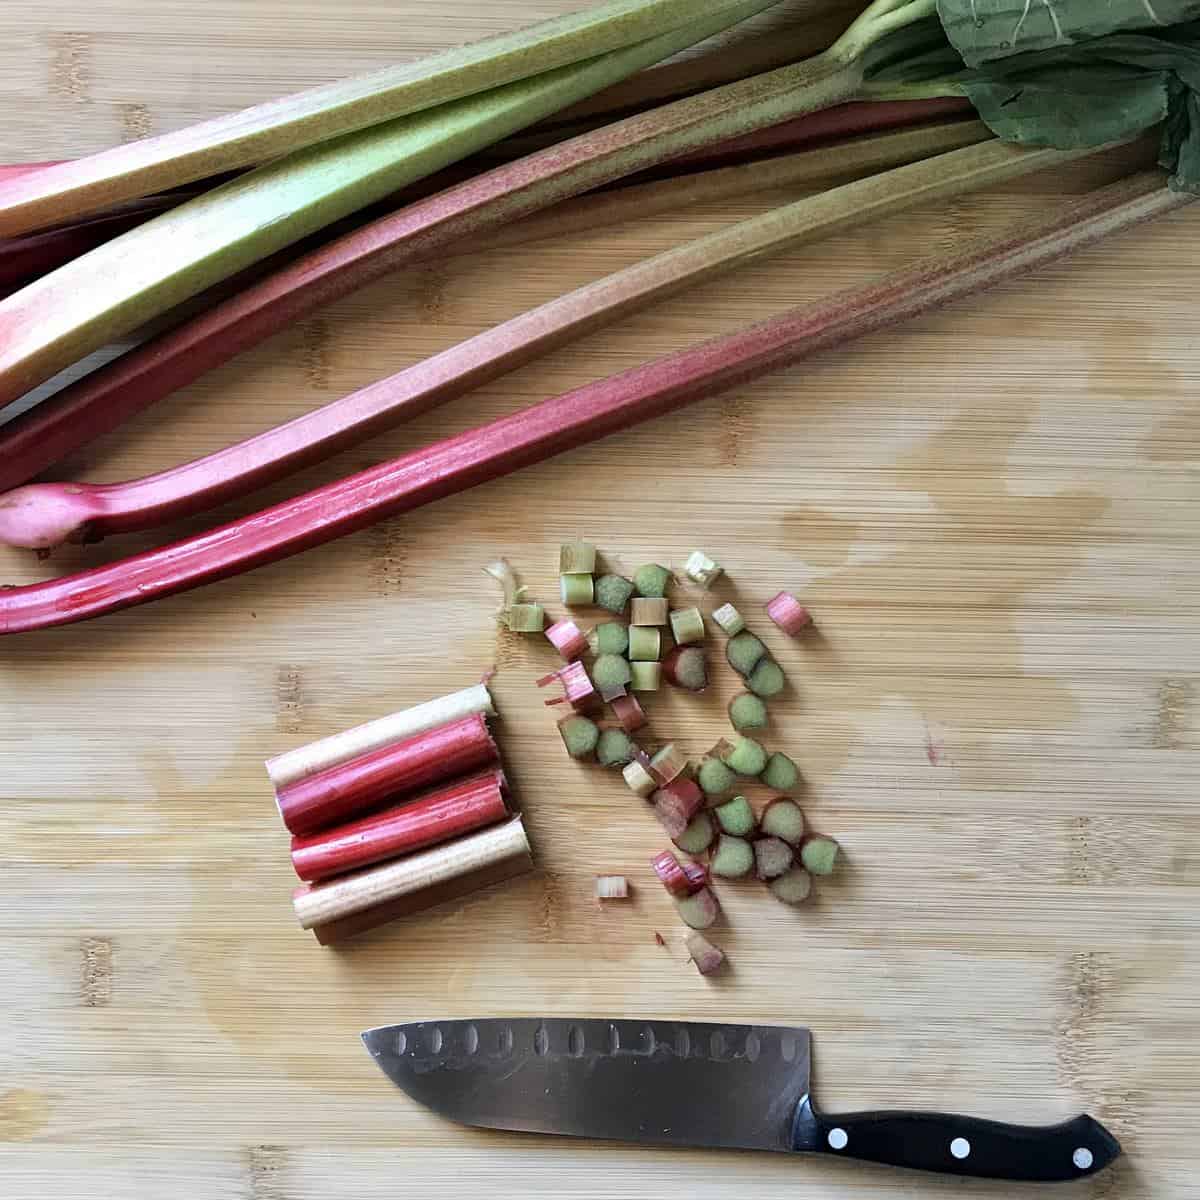 Chopped rhubarb on a wooden board.